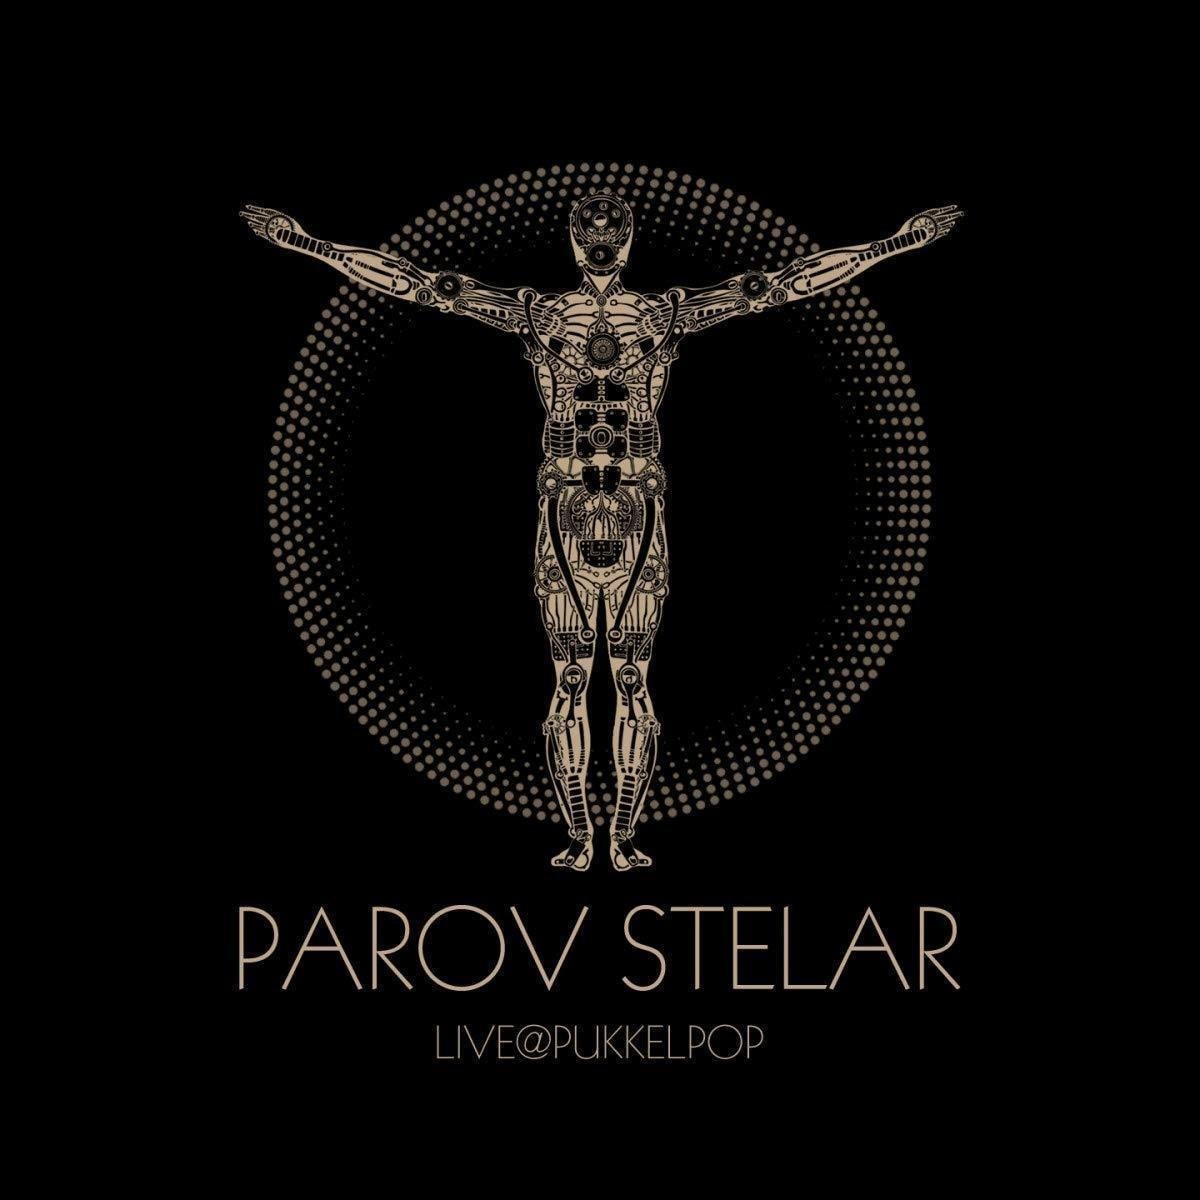 Vinylskiva Parov Stelar Live @ Pukkelpop (2 LP + DVD)